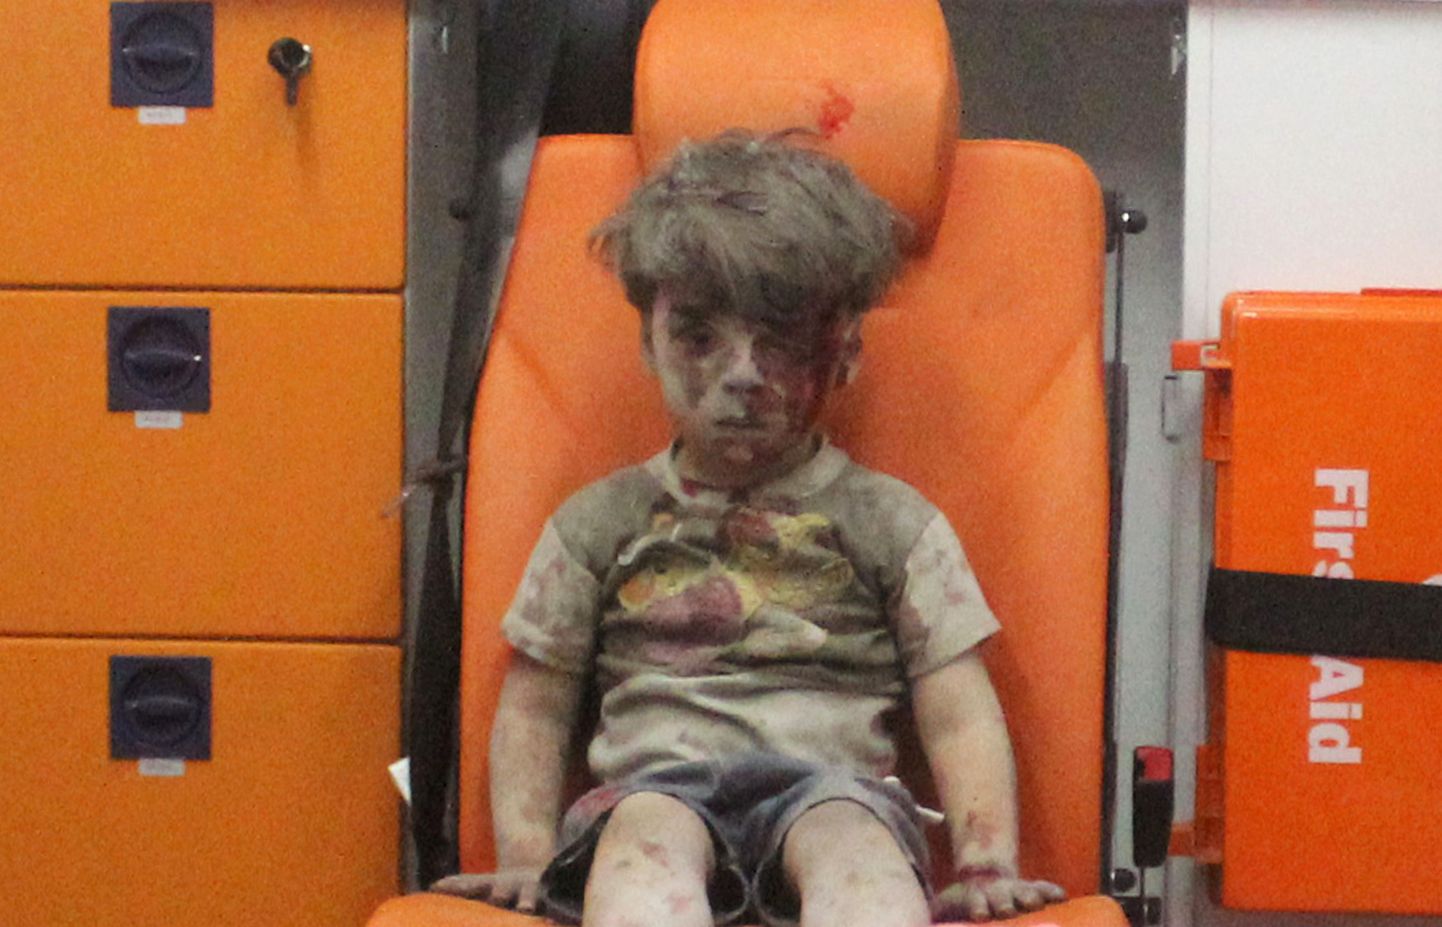 Õhurünnakus vigastada saanud süüria poiss Omran Daqneesh